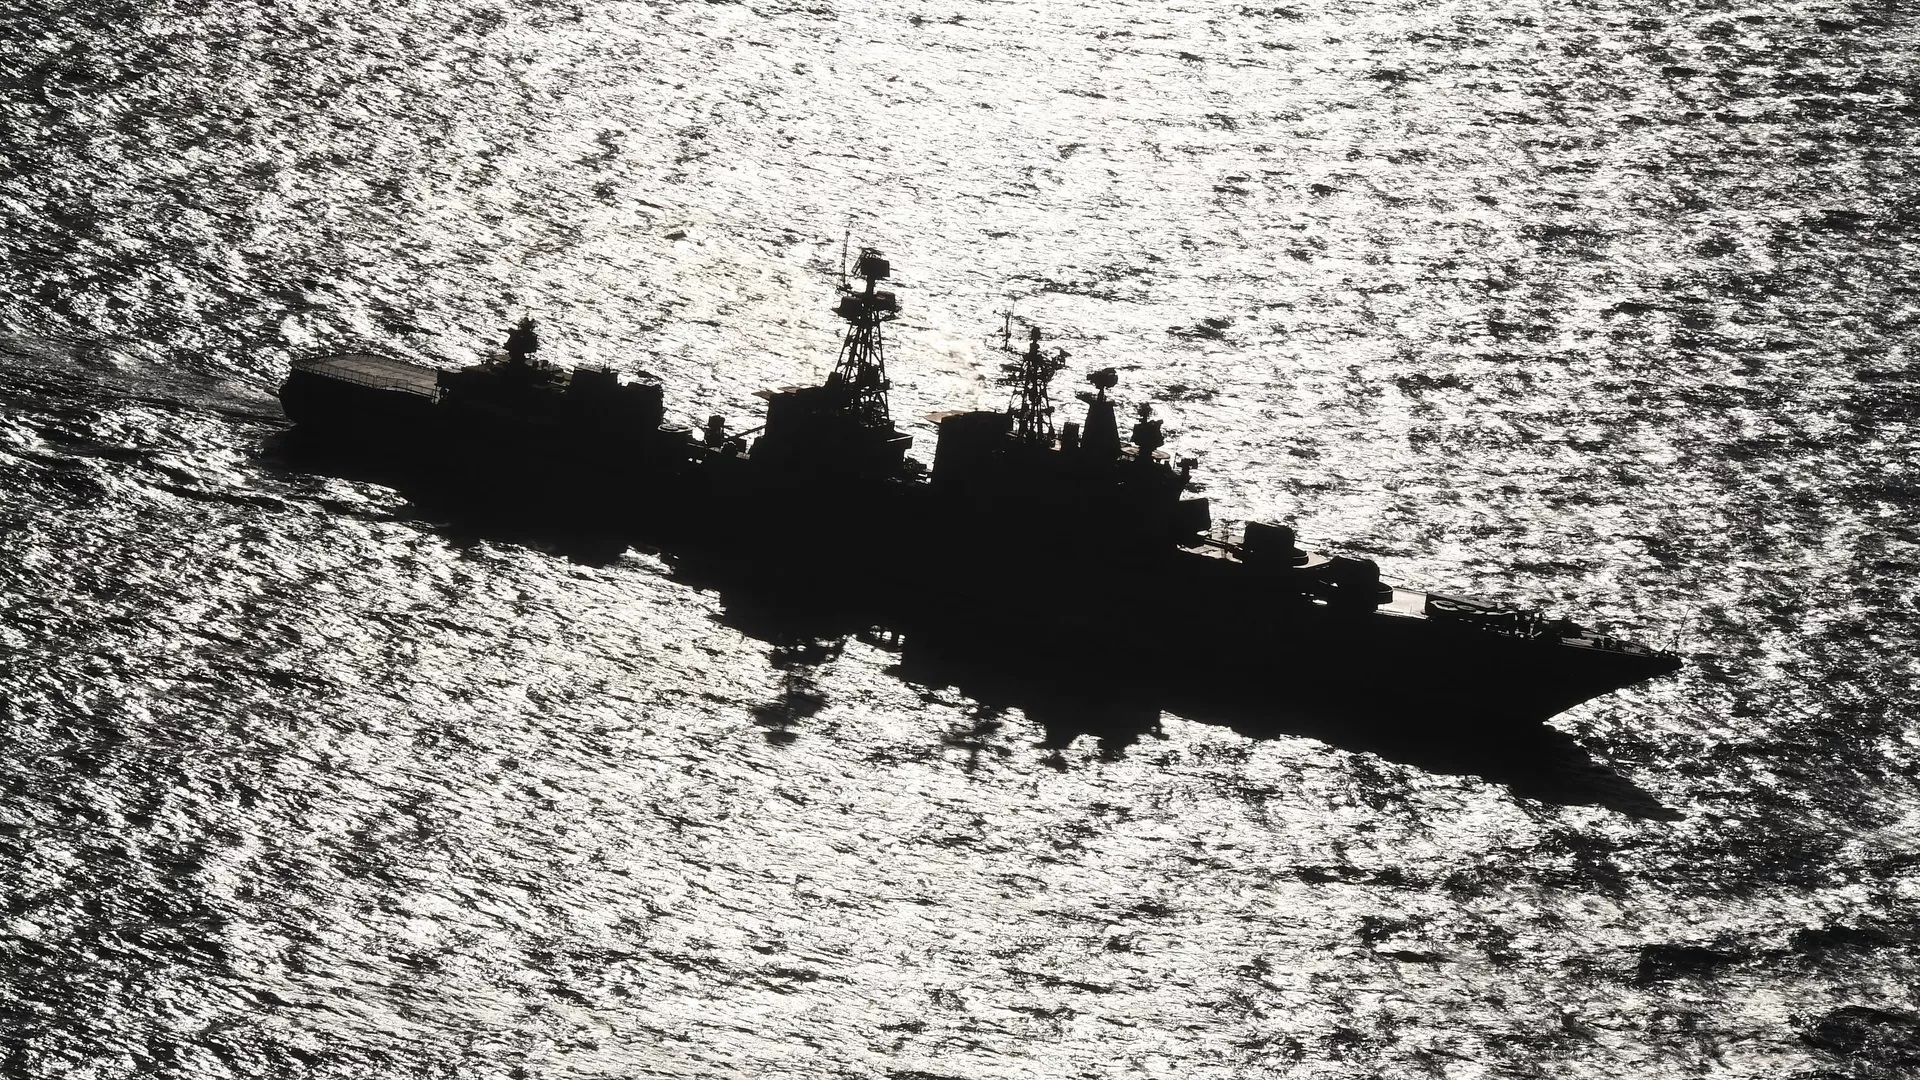 Hạm đội Thái Bình Dương tập trận ‘tiêu diệt’ tàu ngầm đối phương